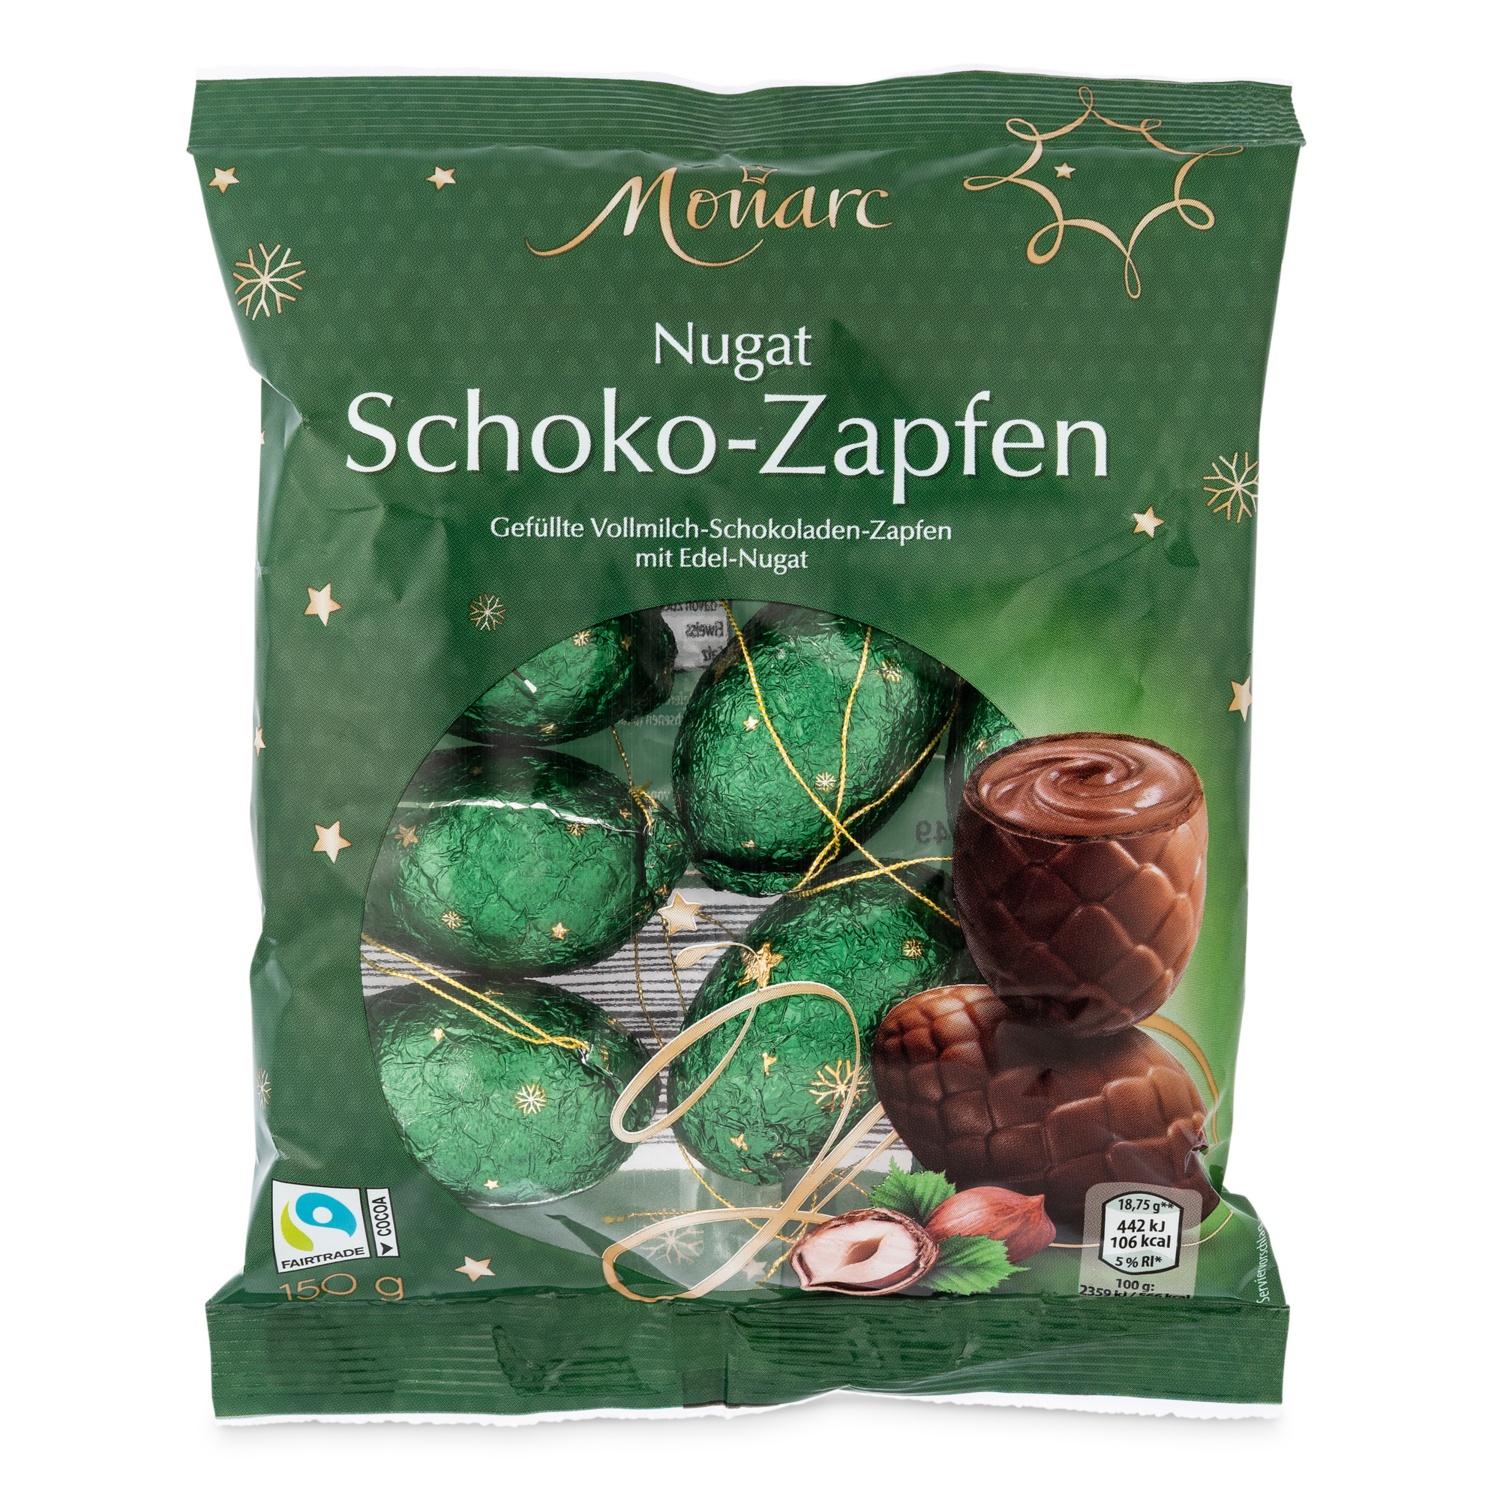 MONARC Schoko-Zapfen, Nugat